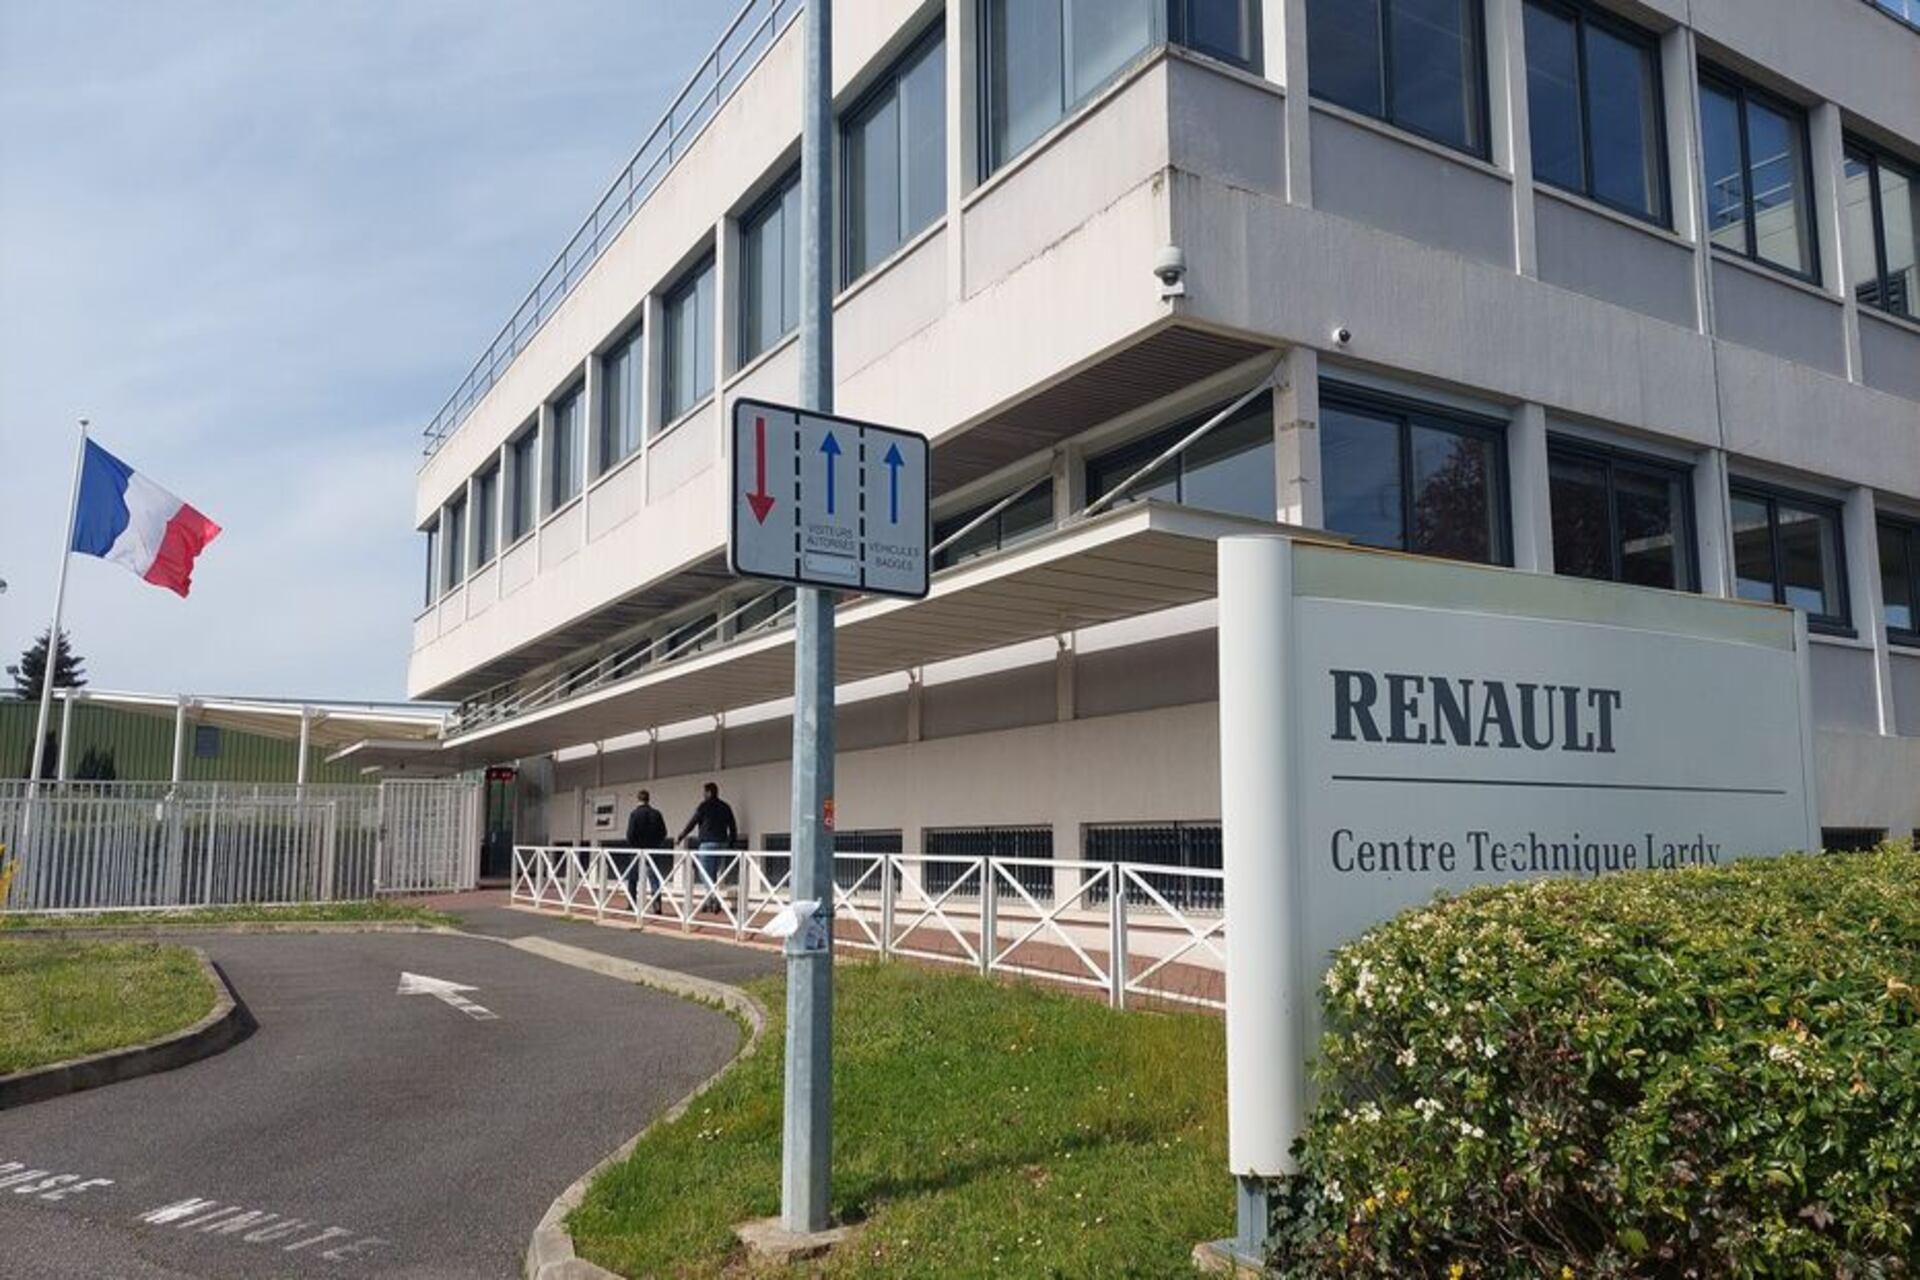 Inovacioni i Laboratorit: Renault në Lardy